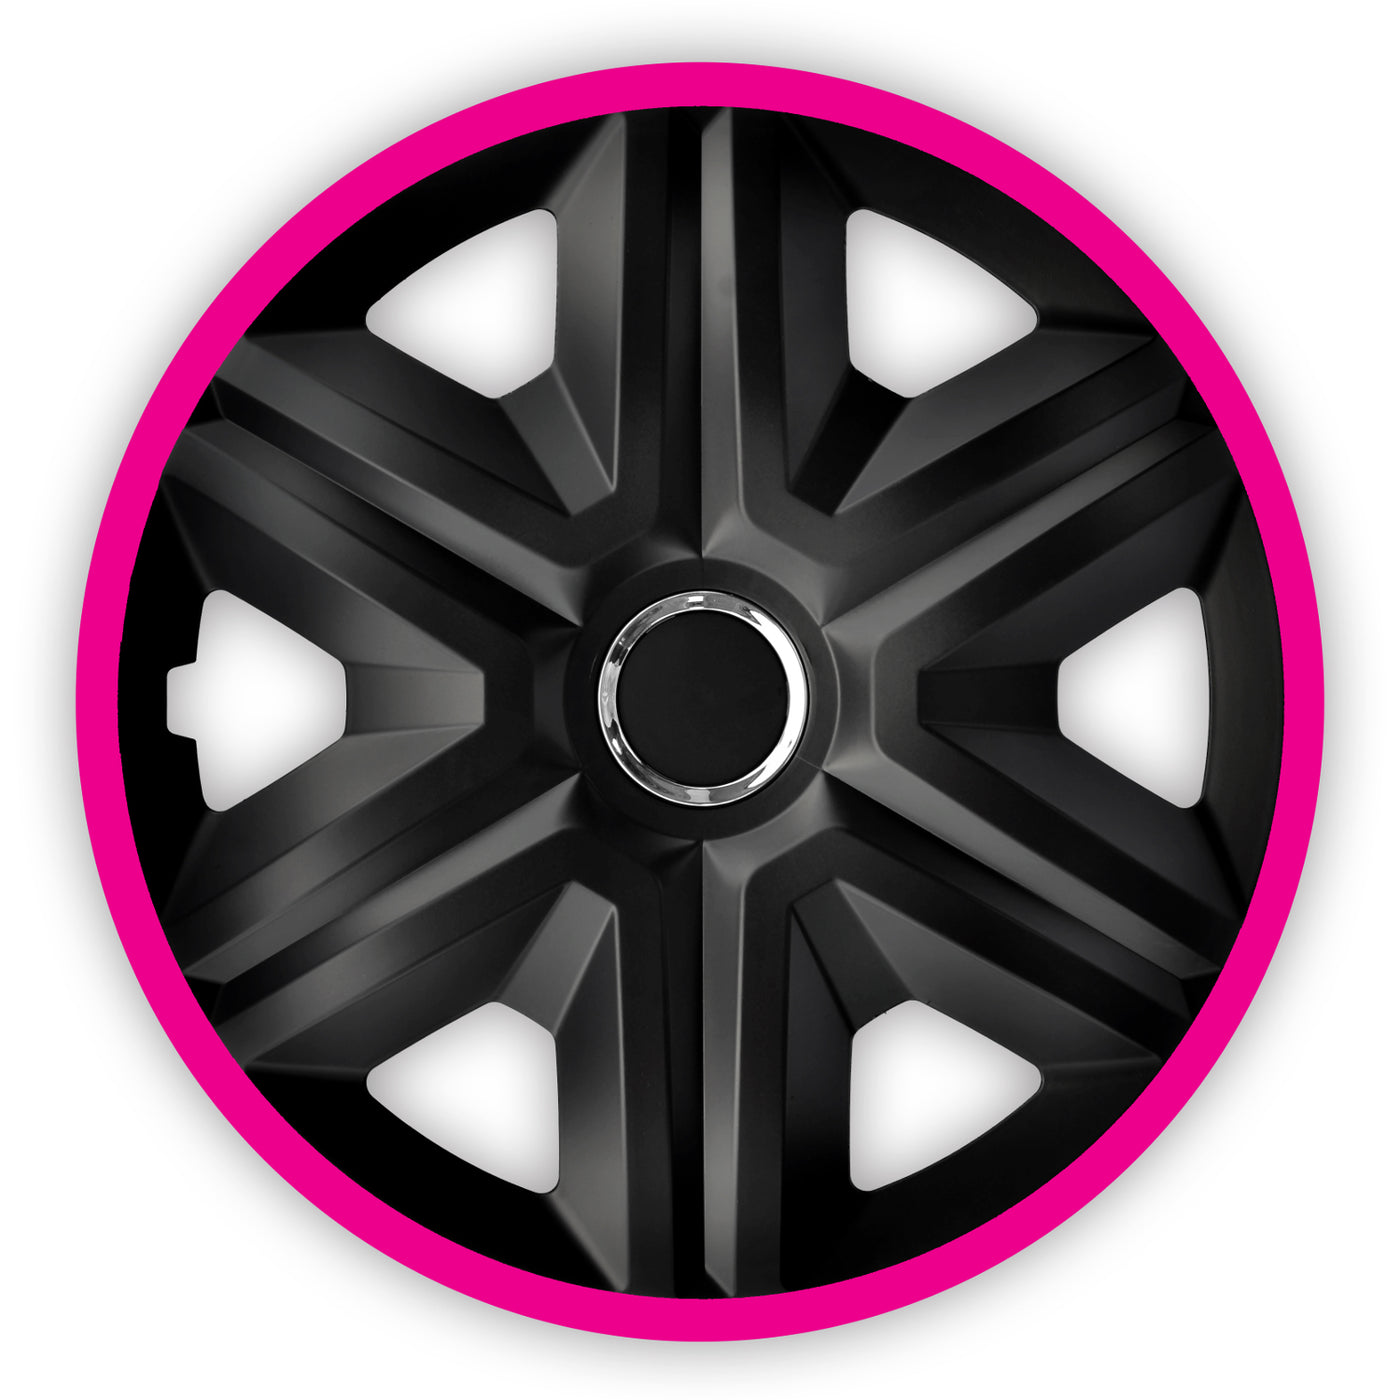 Kołpaki 16" NRM FAST LUX PINK różowo-czarne 4 sztuki